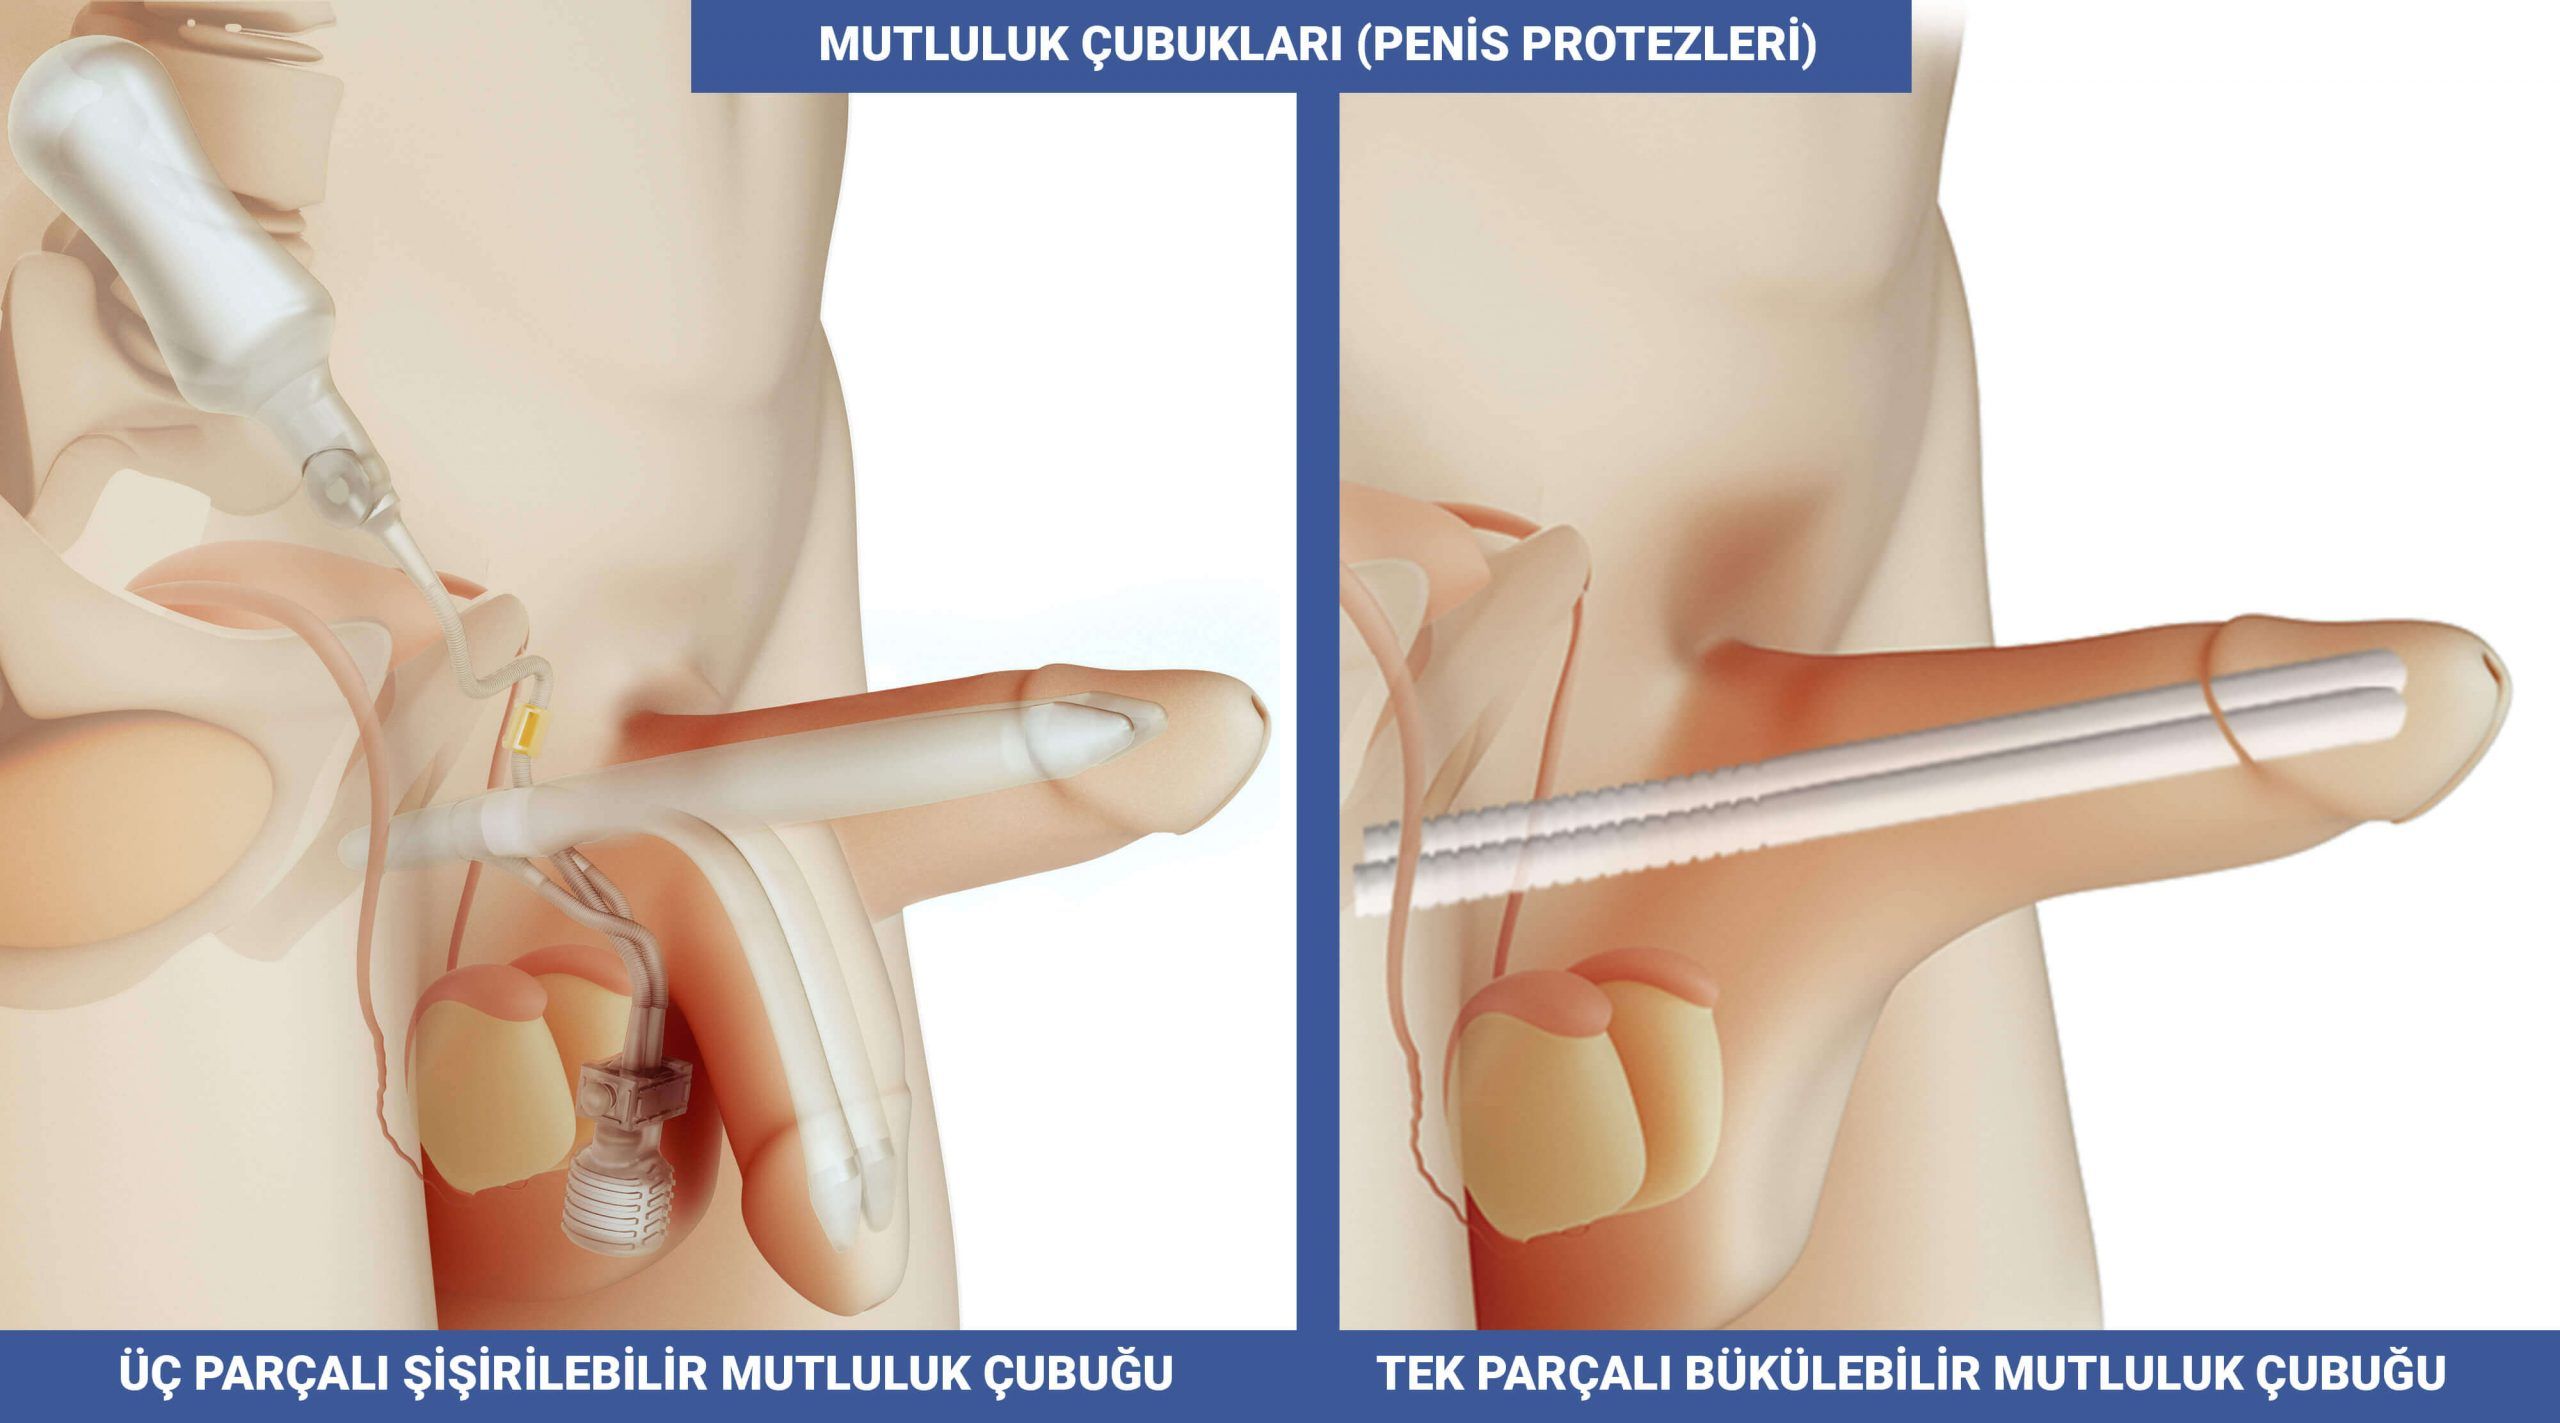 Penil implant (Penil Protezler veya Mutluluk Çubuğu) Nedir?